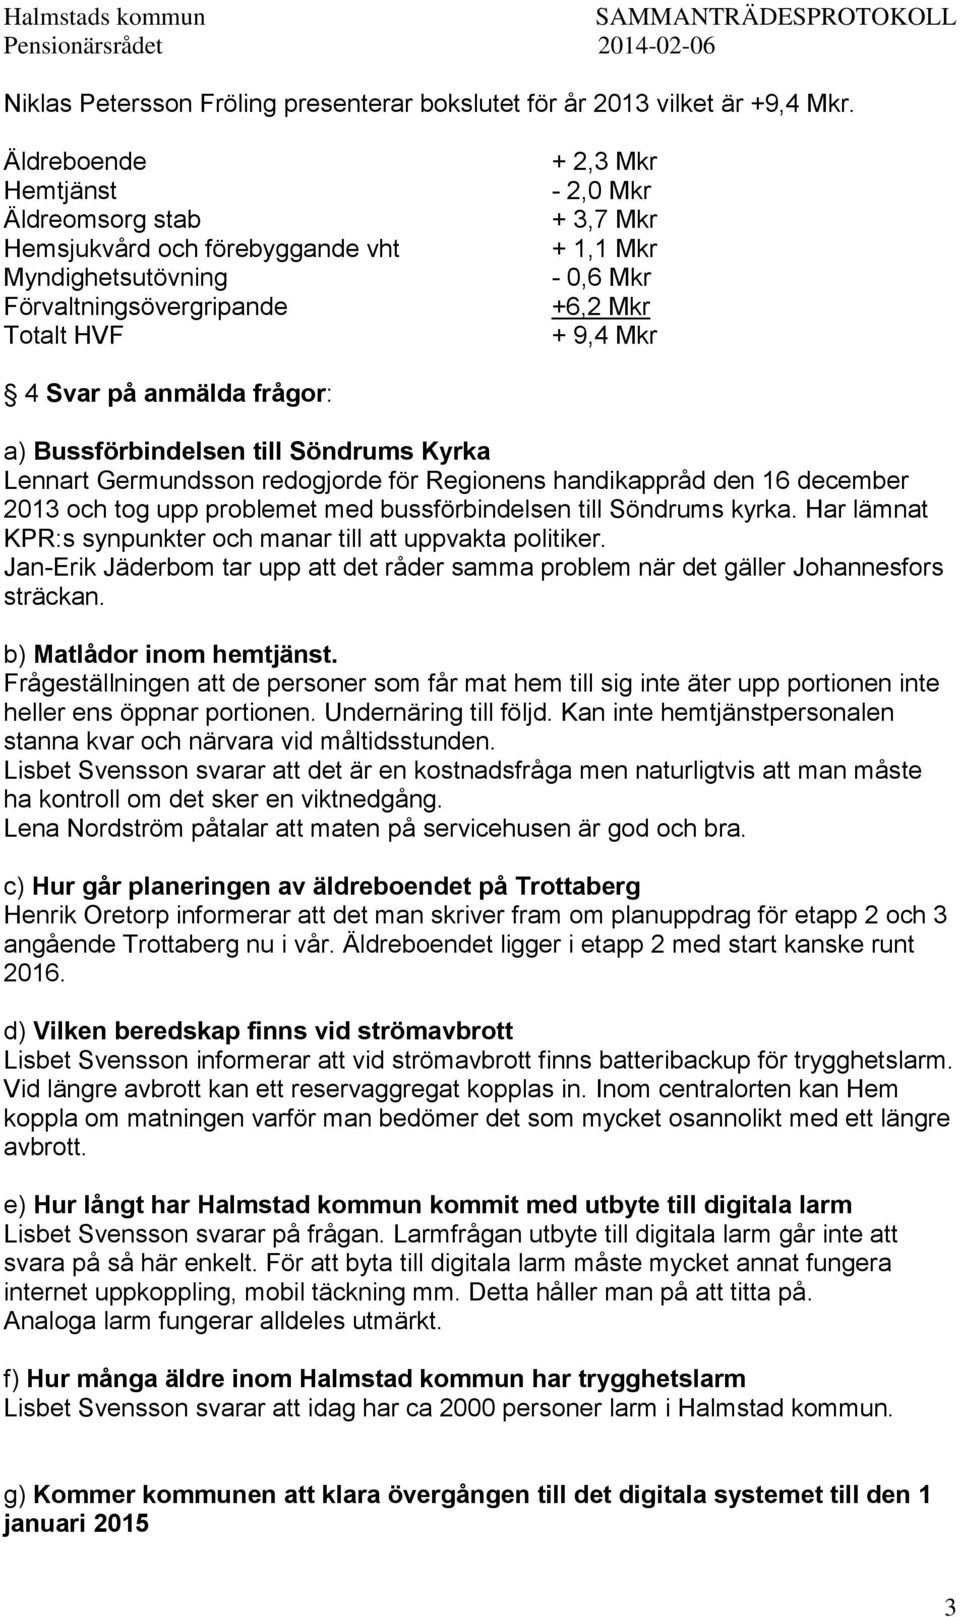 Svar på anmälda frågor: a) Bussförbindelsen till Söndrums Kyrka Lennart Germundsson redogjorde för Regionens handikappråd den 16 december 2013 och tog upp problemet med bussförbindelsen till Söndrums